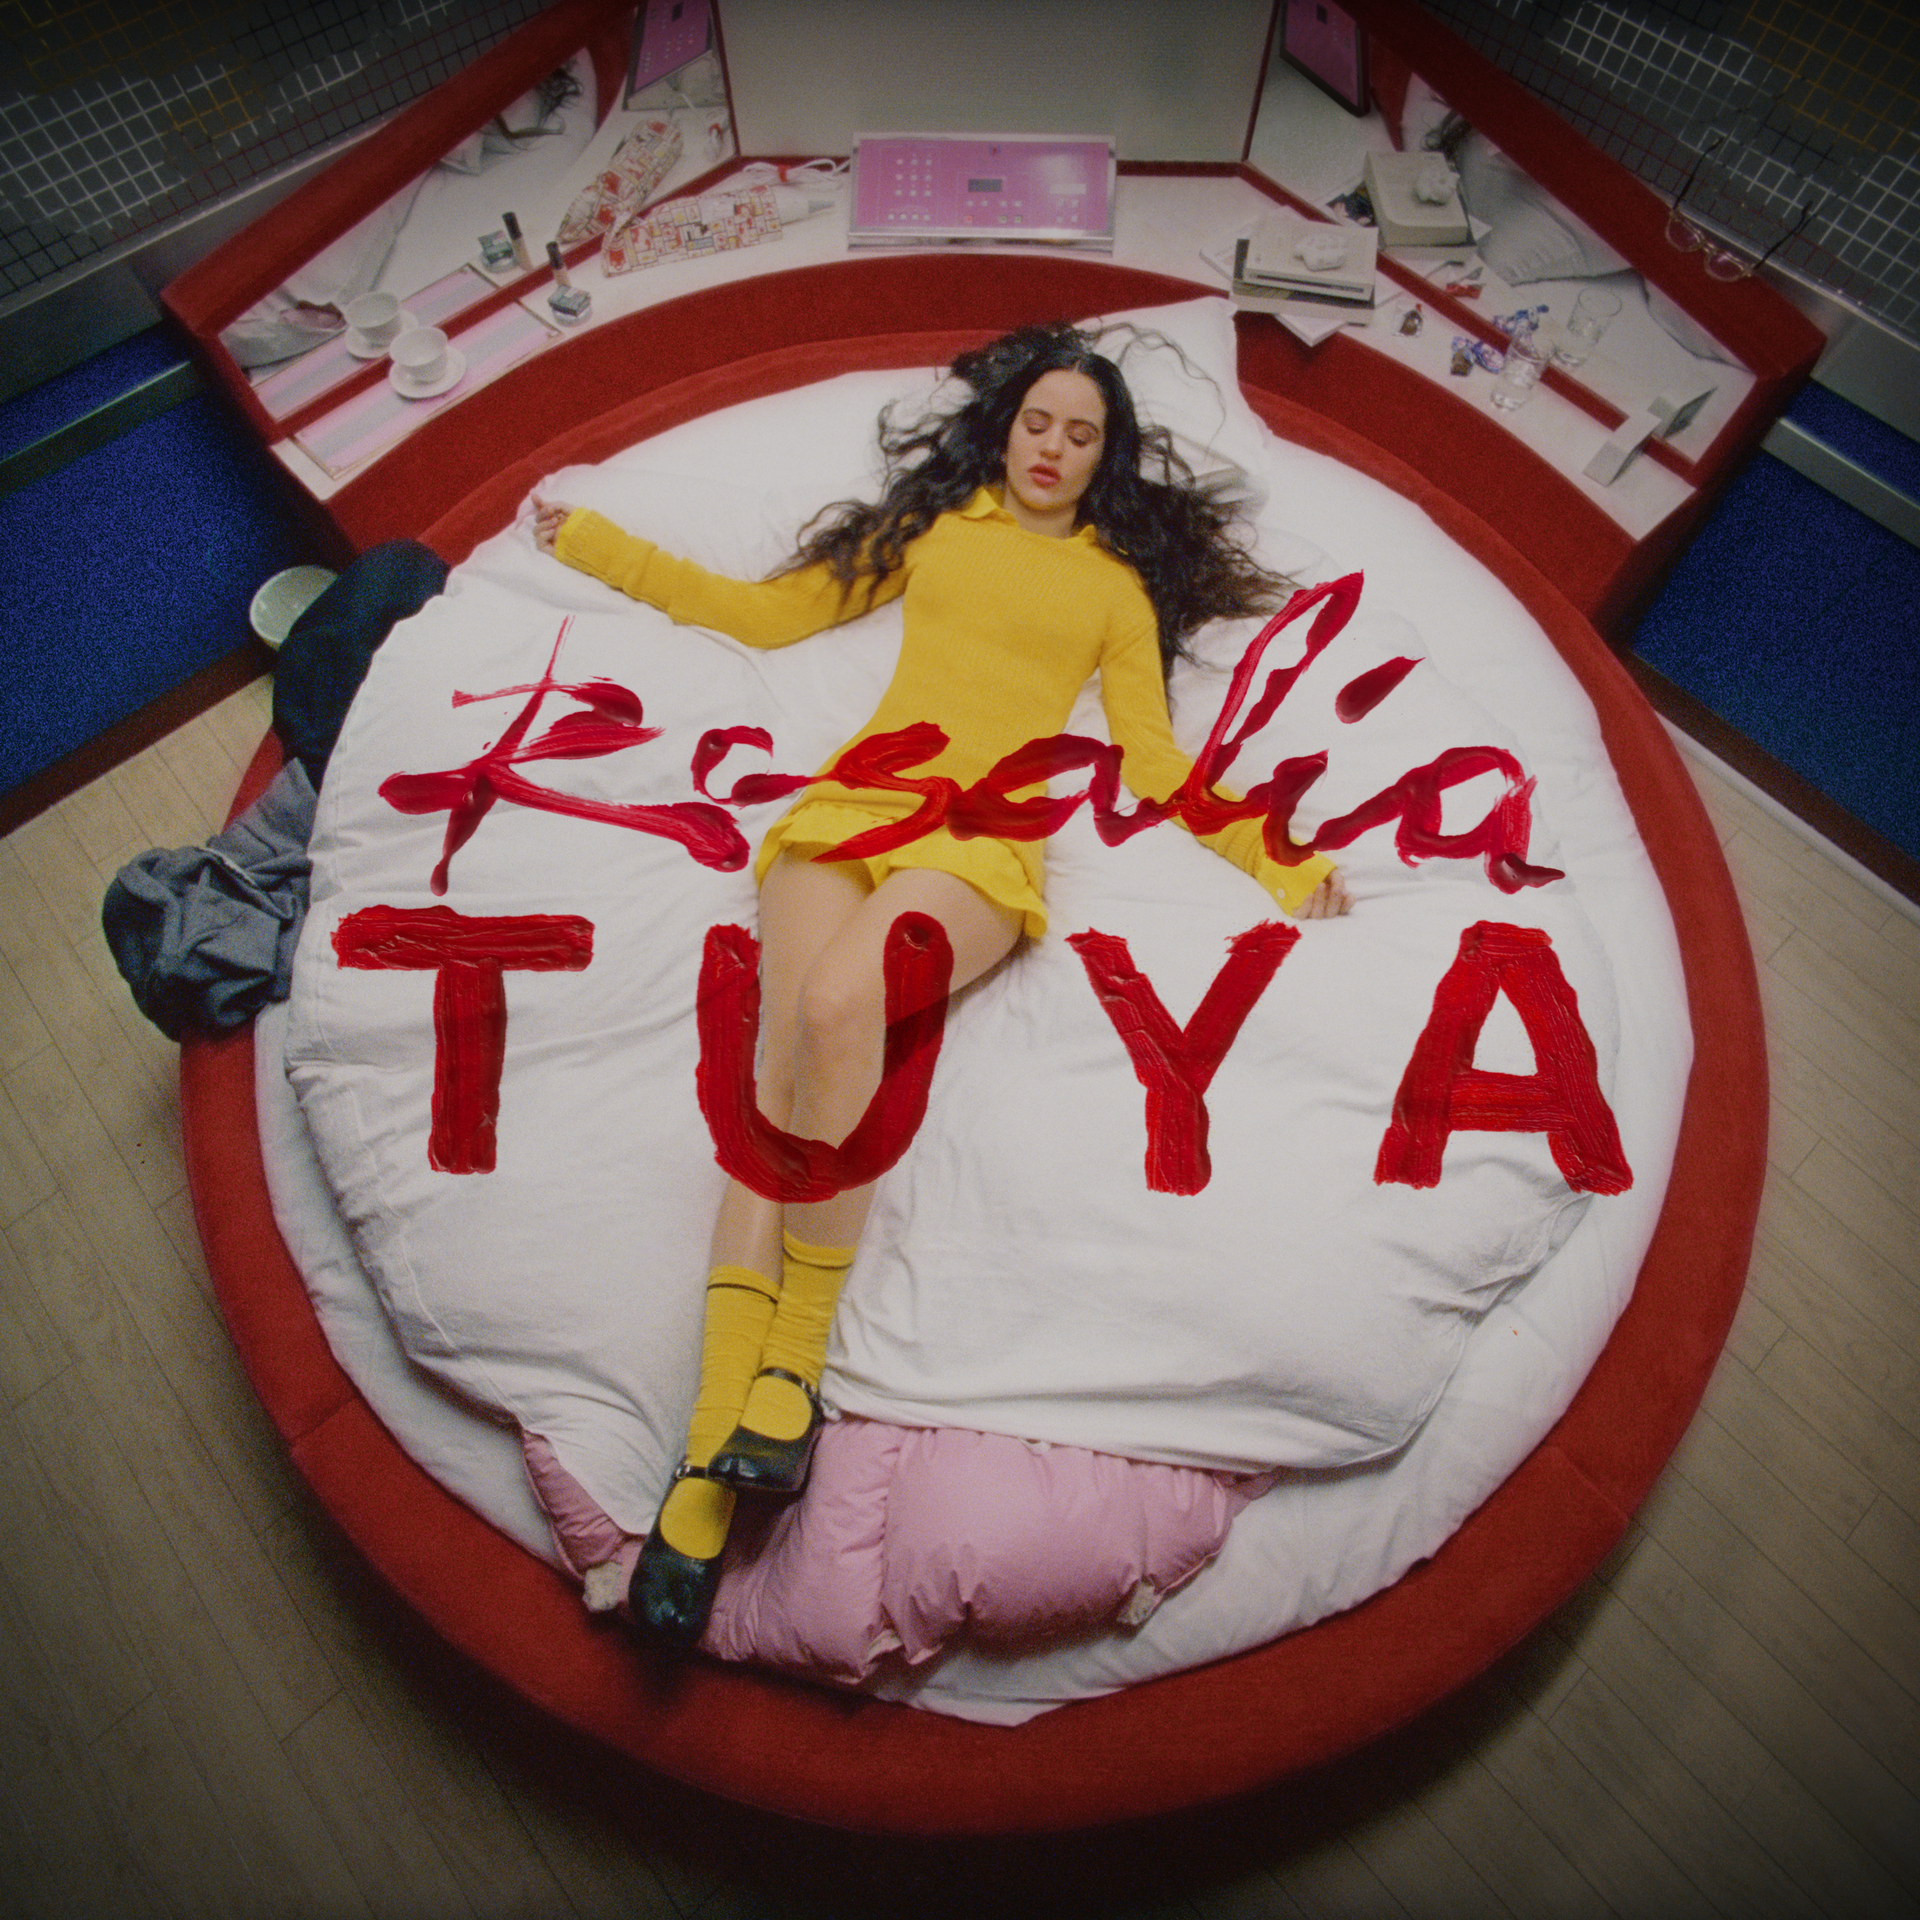 Rosalía lanza su nueva canción y vídeo “Tuya”